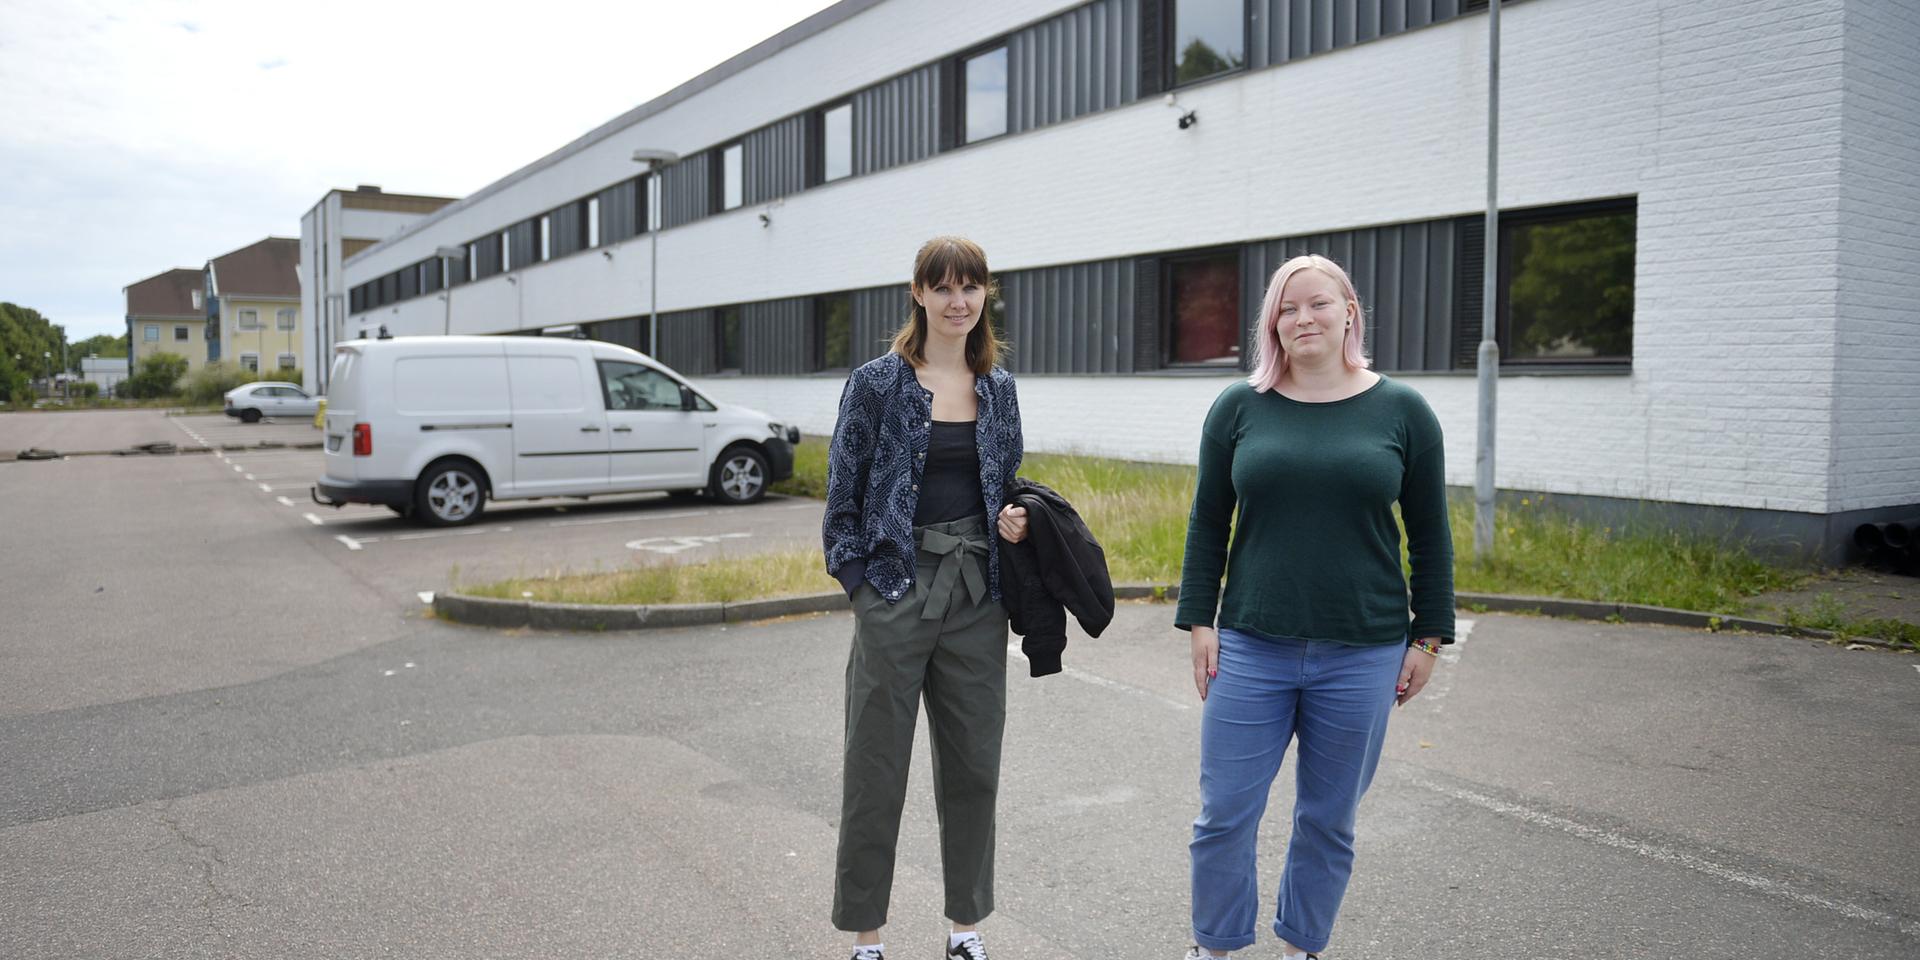 Hyran på Vallås kommer att vara lite lägre än i andra studentboenden, enligt Hanne Göransson och Marielle Bock.